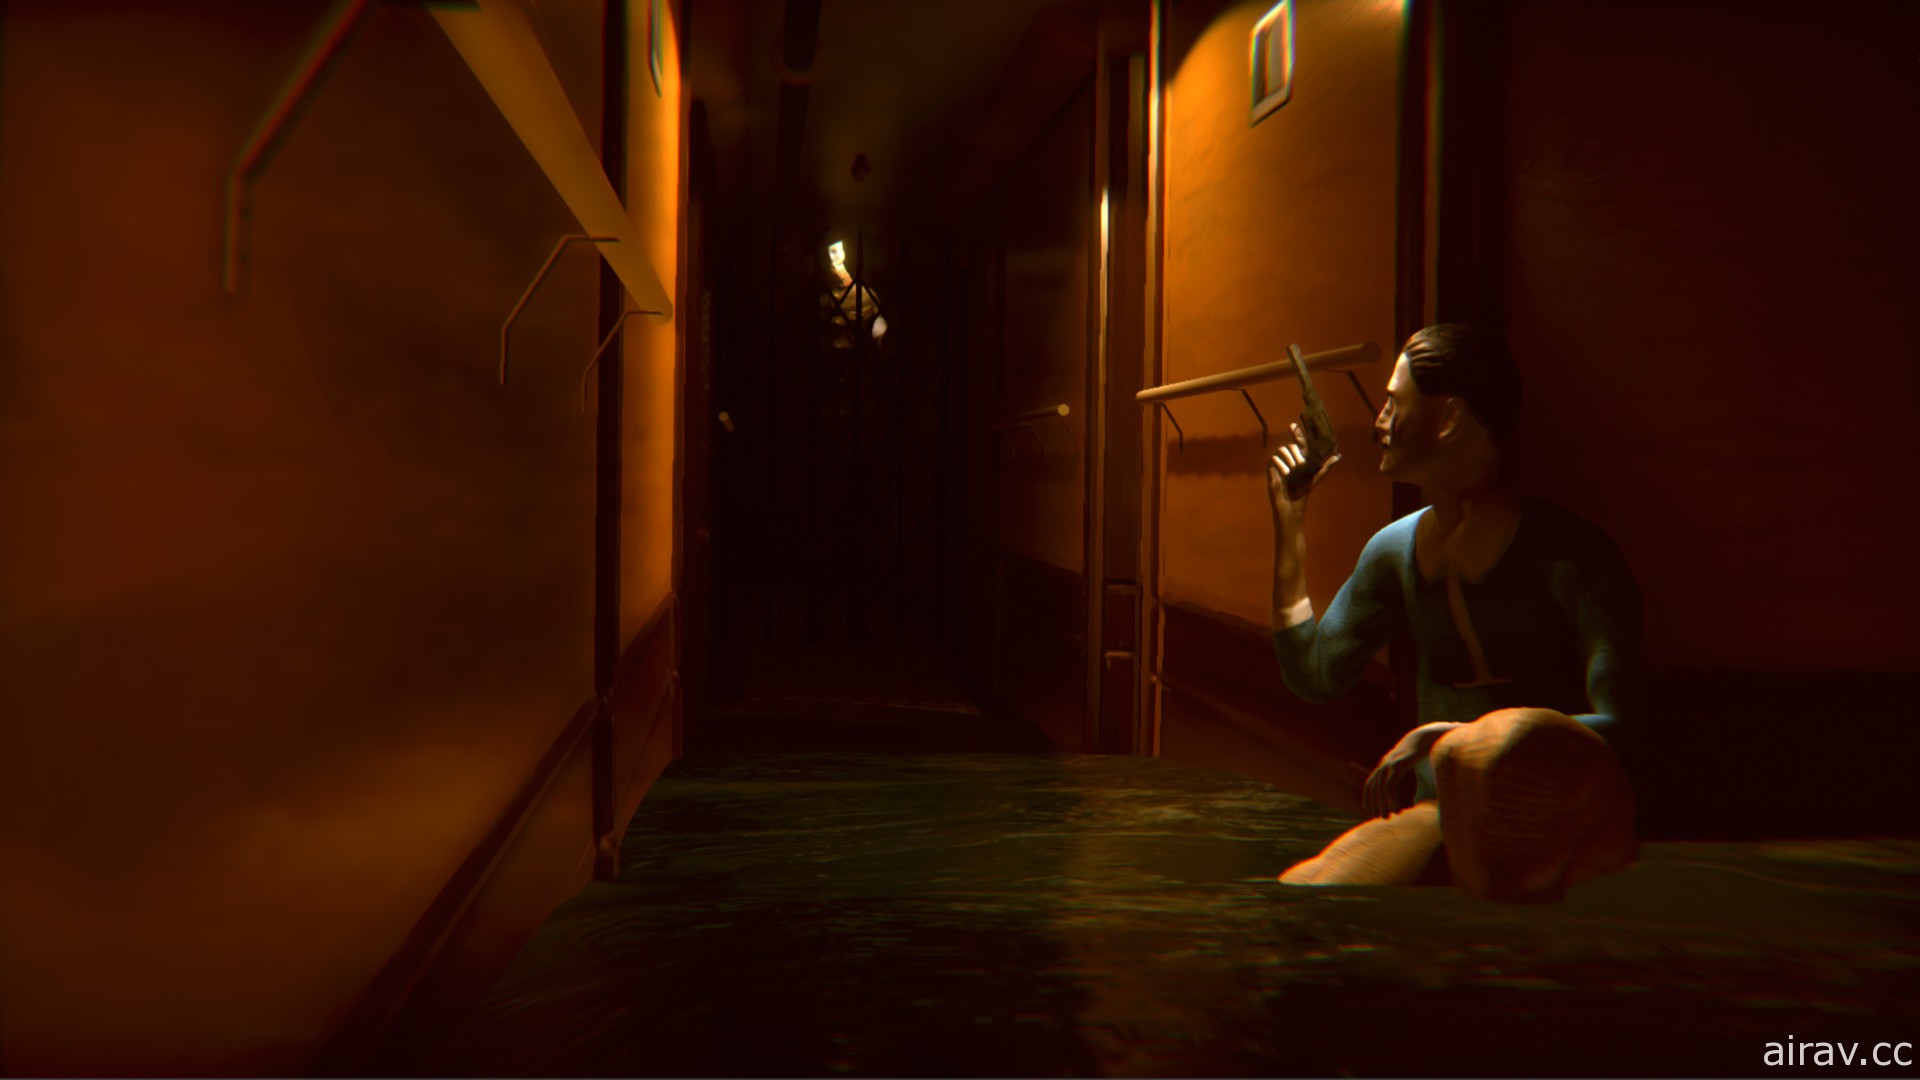 独立游戏开发第一人称恐怖游戏《沉没邮轮 Under》10 月底发售 释出新宣传影片